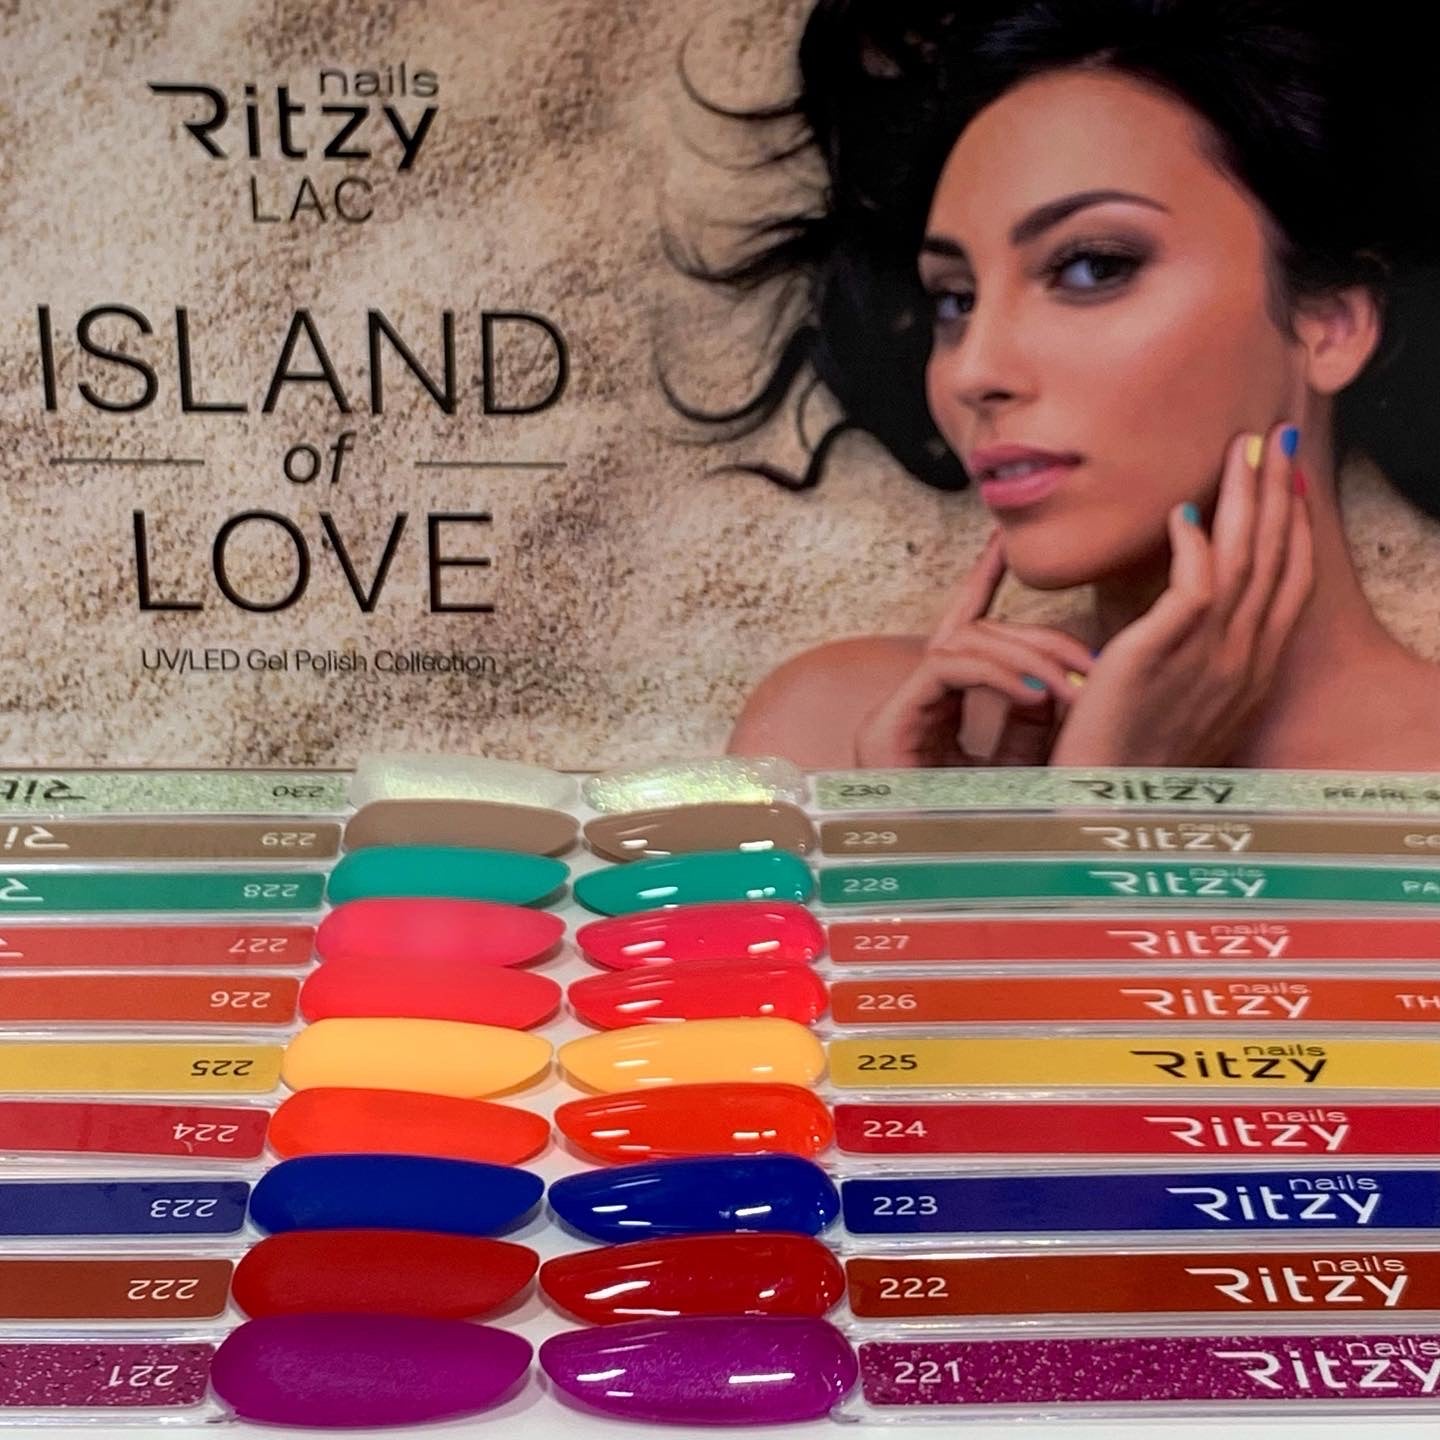 “Island of love ”colección de 10colores x 9ml